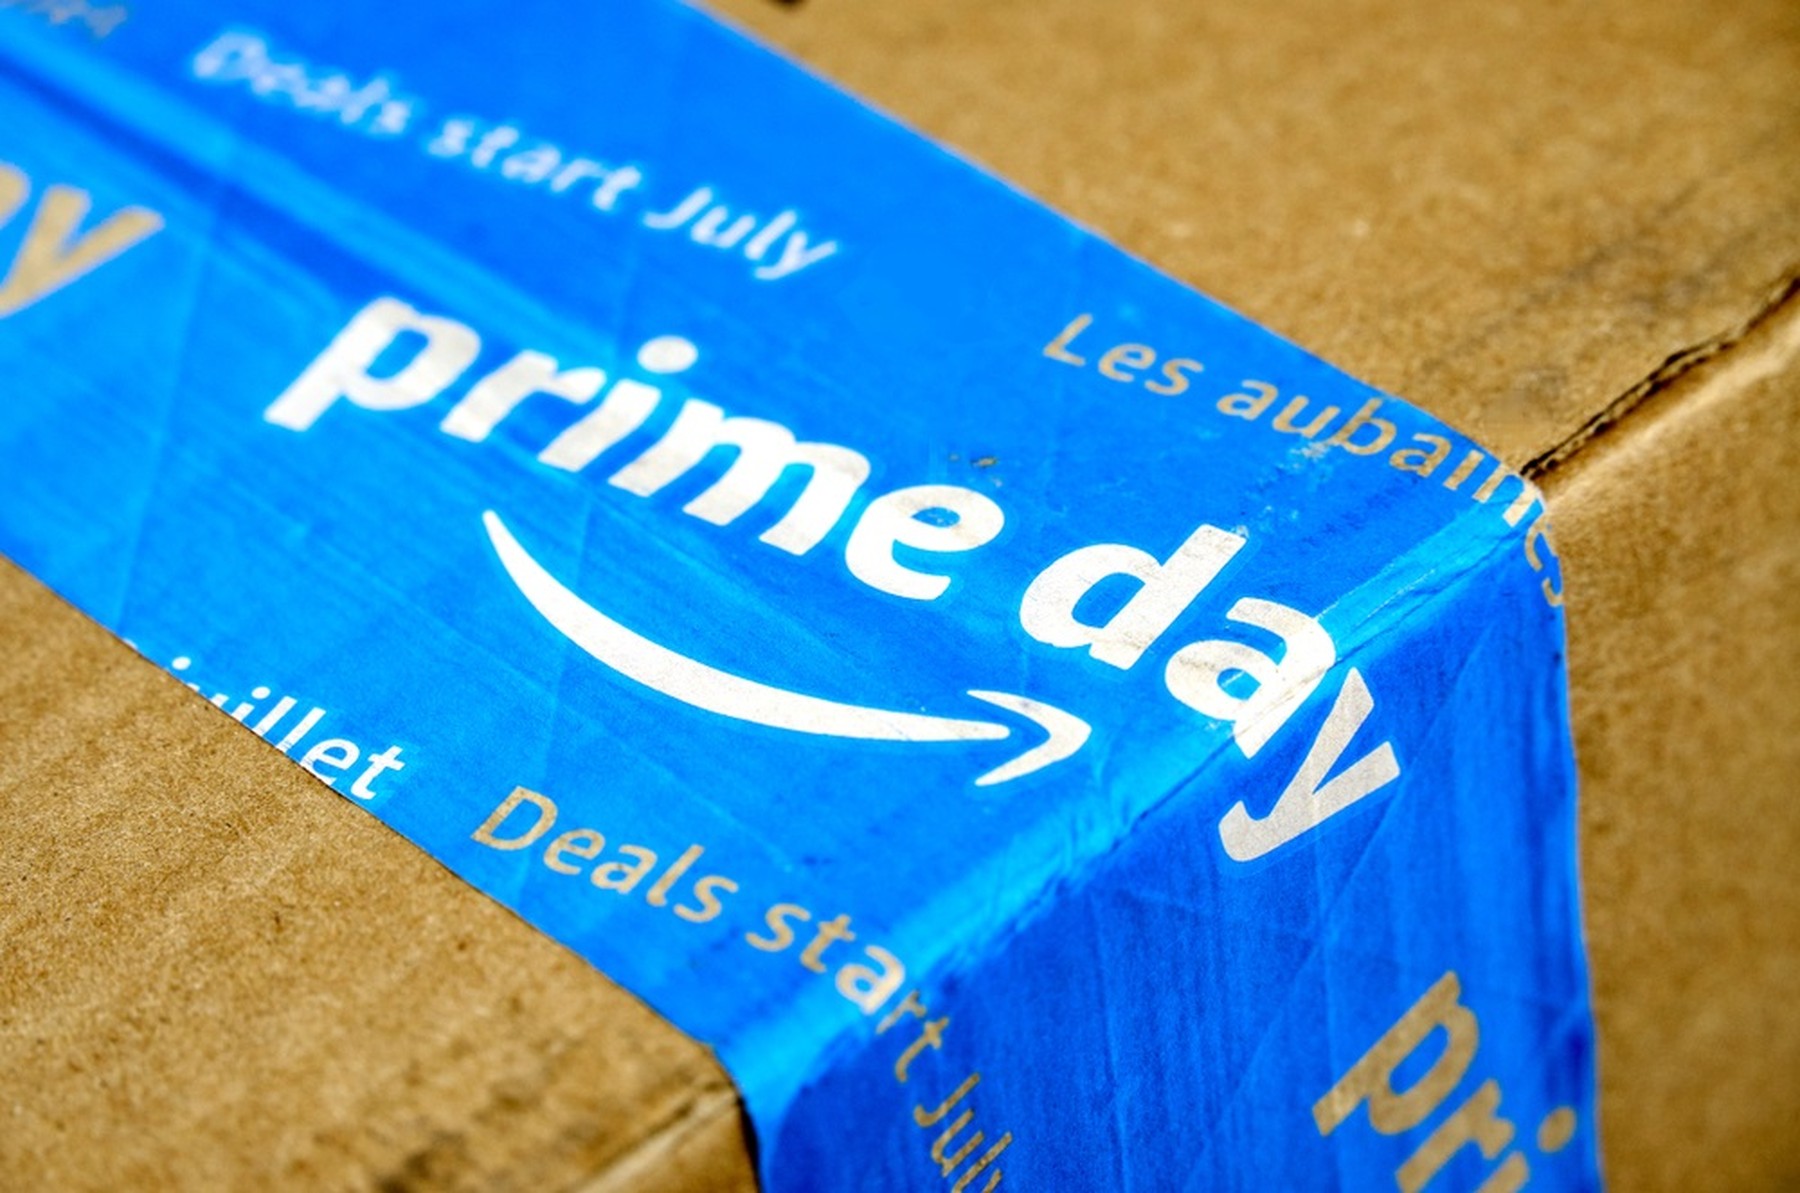 Paquete de cartón con una etiqueta azul del Prime Day